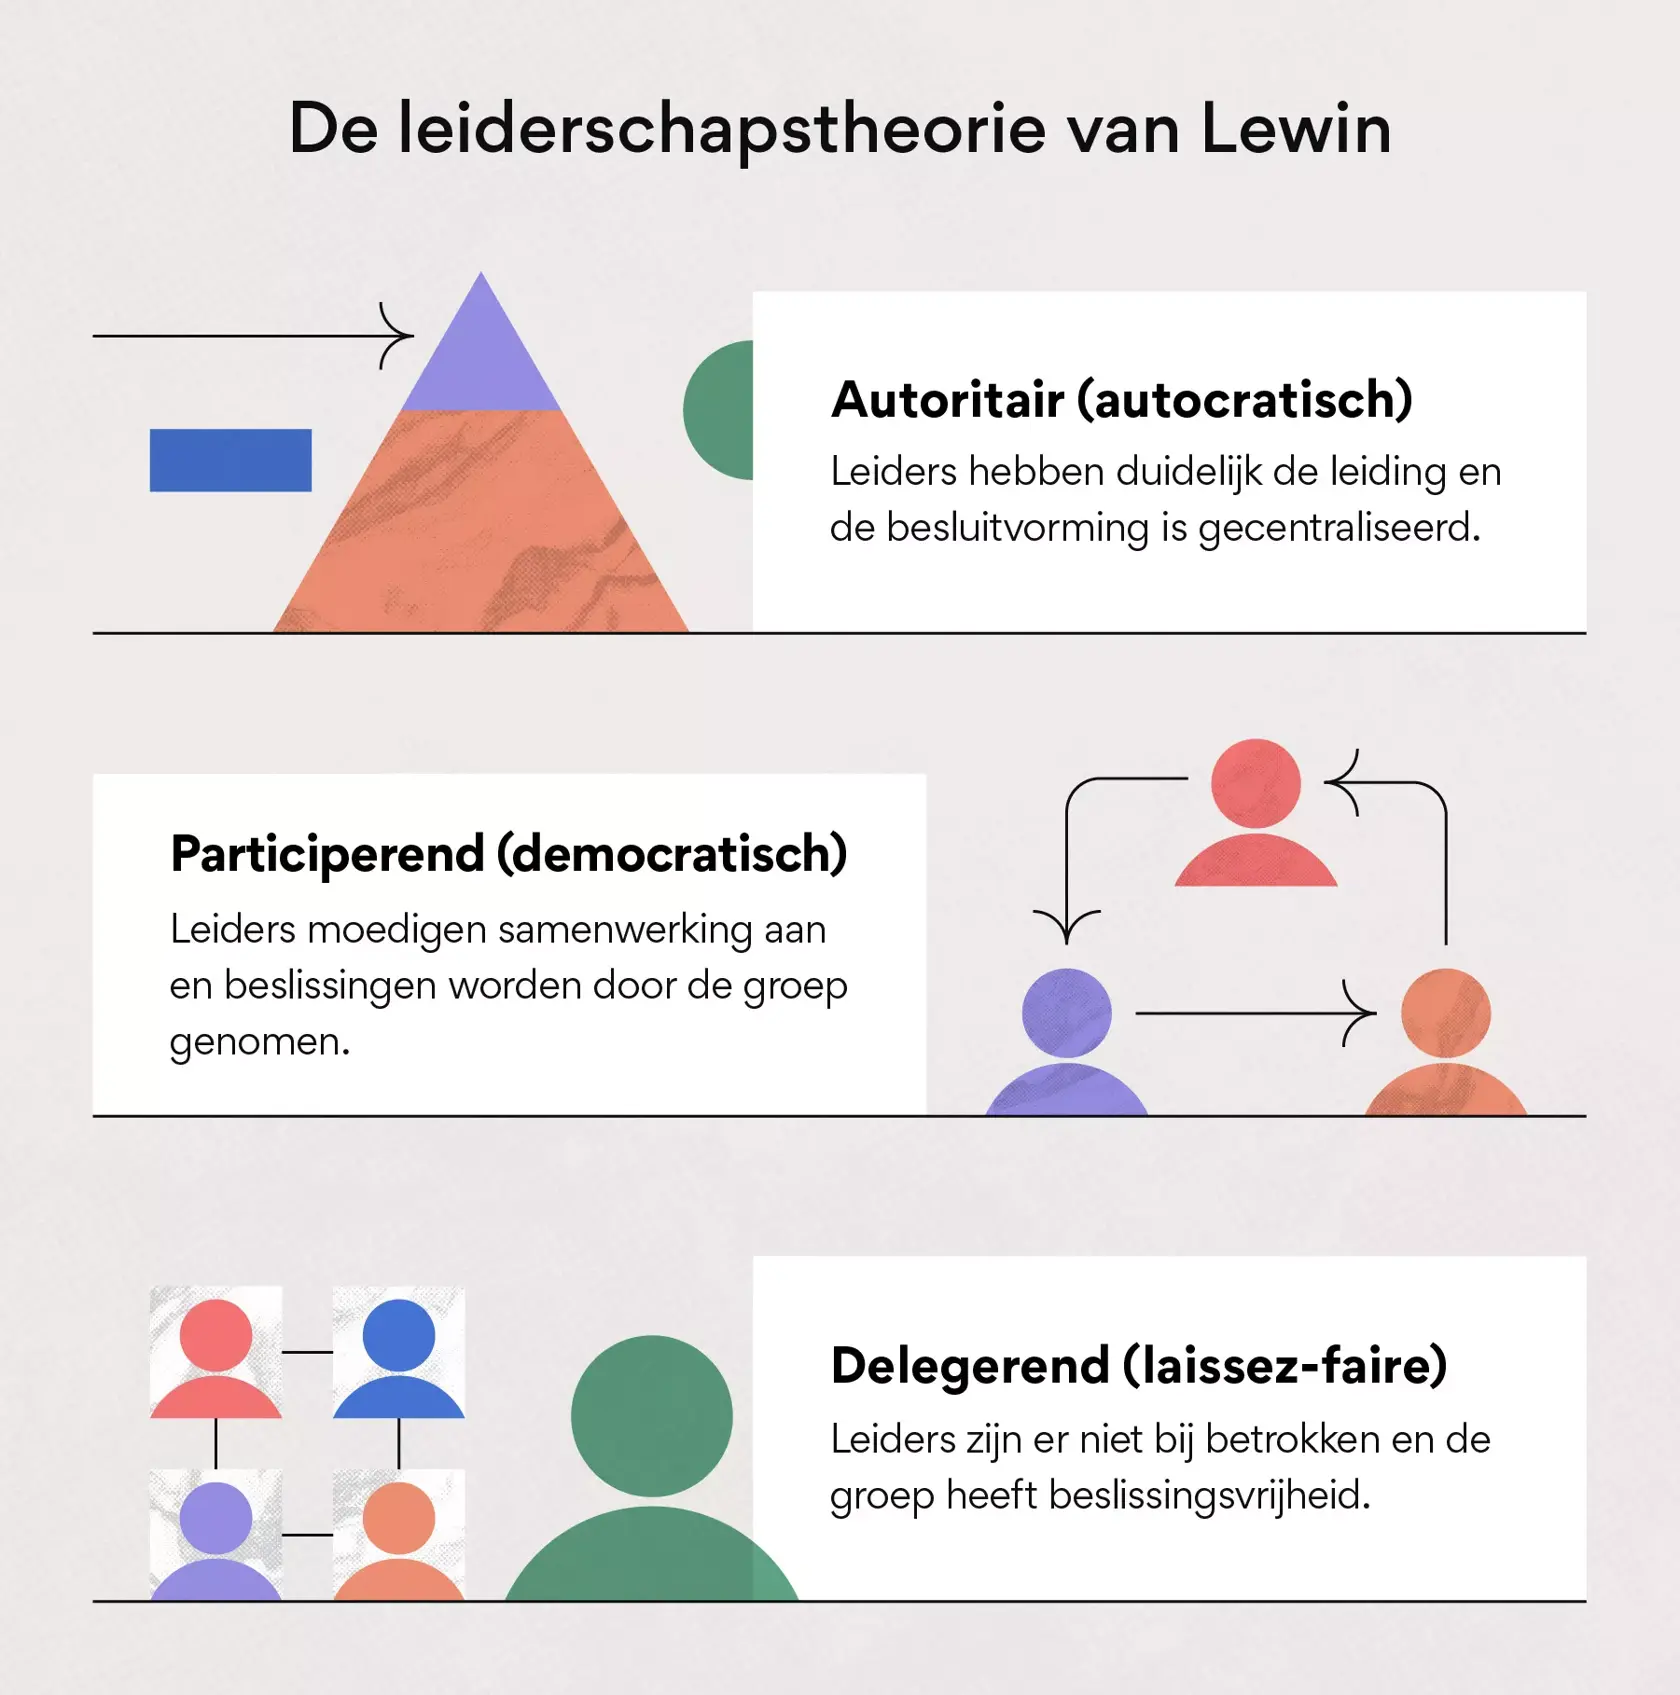 De leiderschapstheorie van Lewin